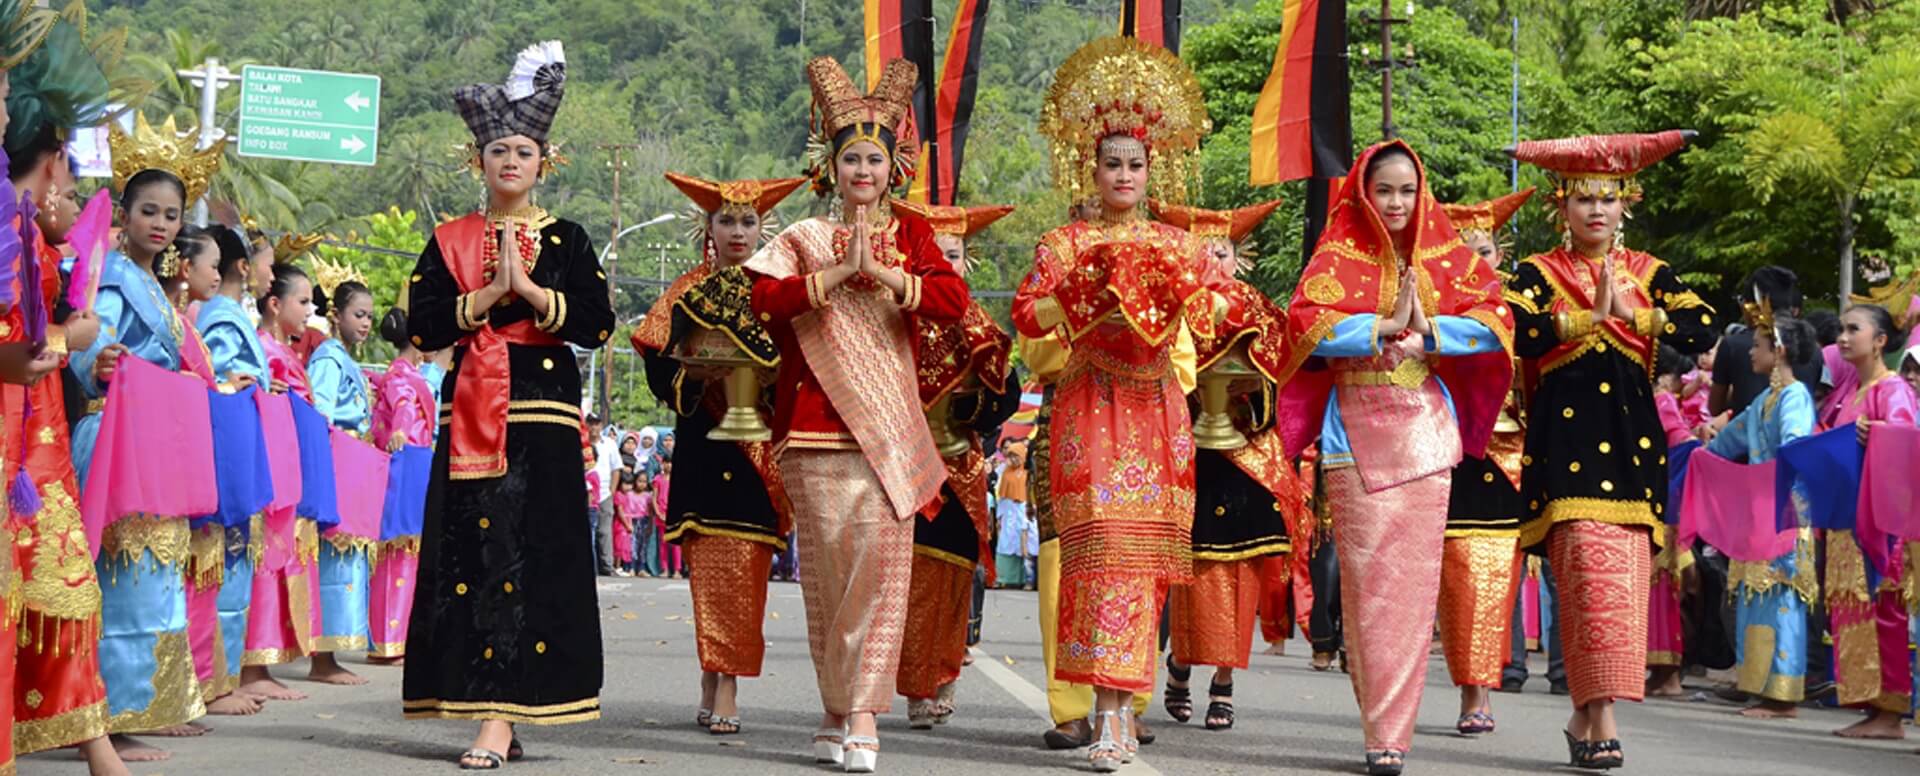 Culture and Tradition in Indonesia | Villanovo